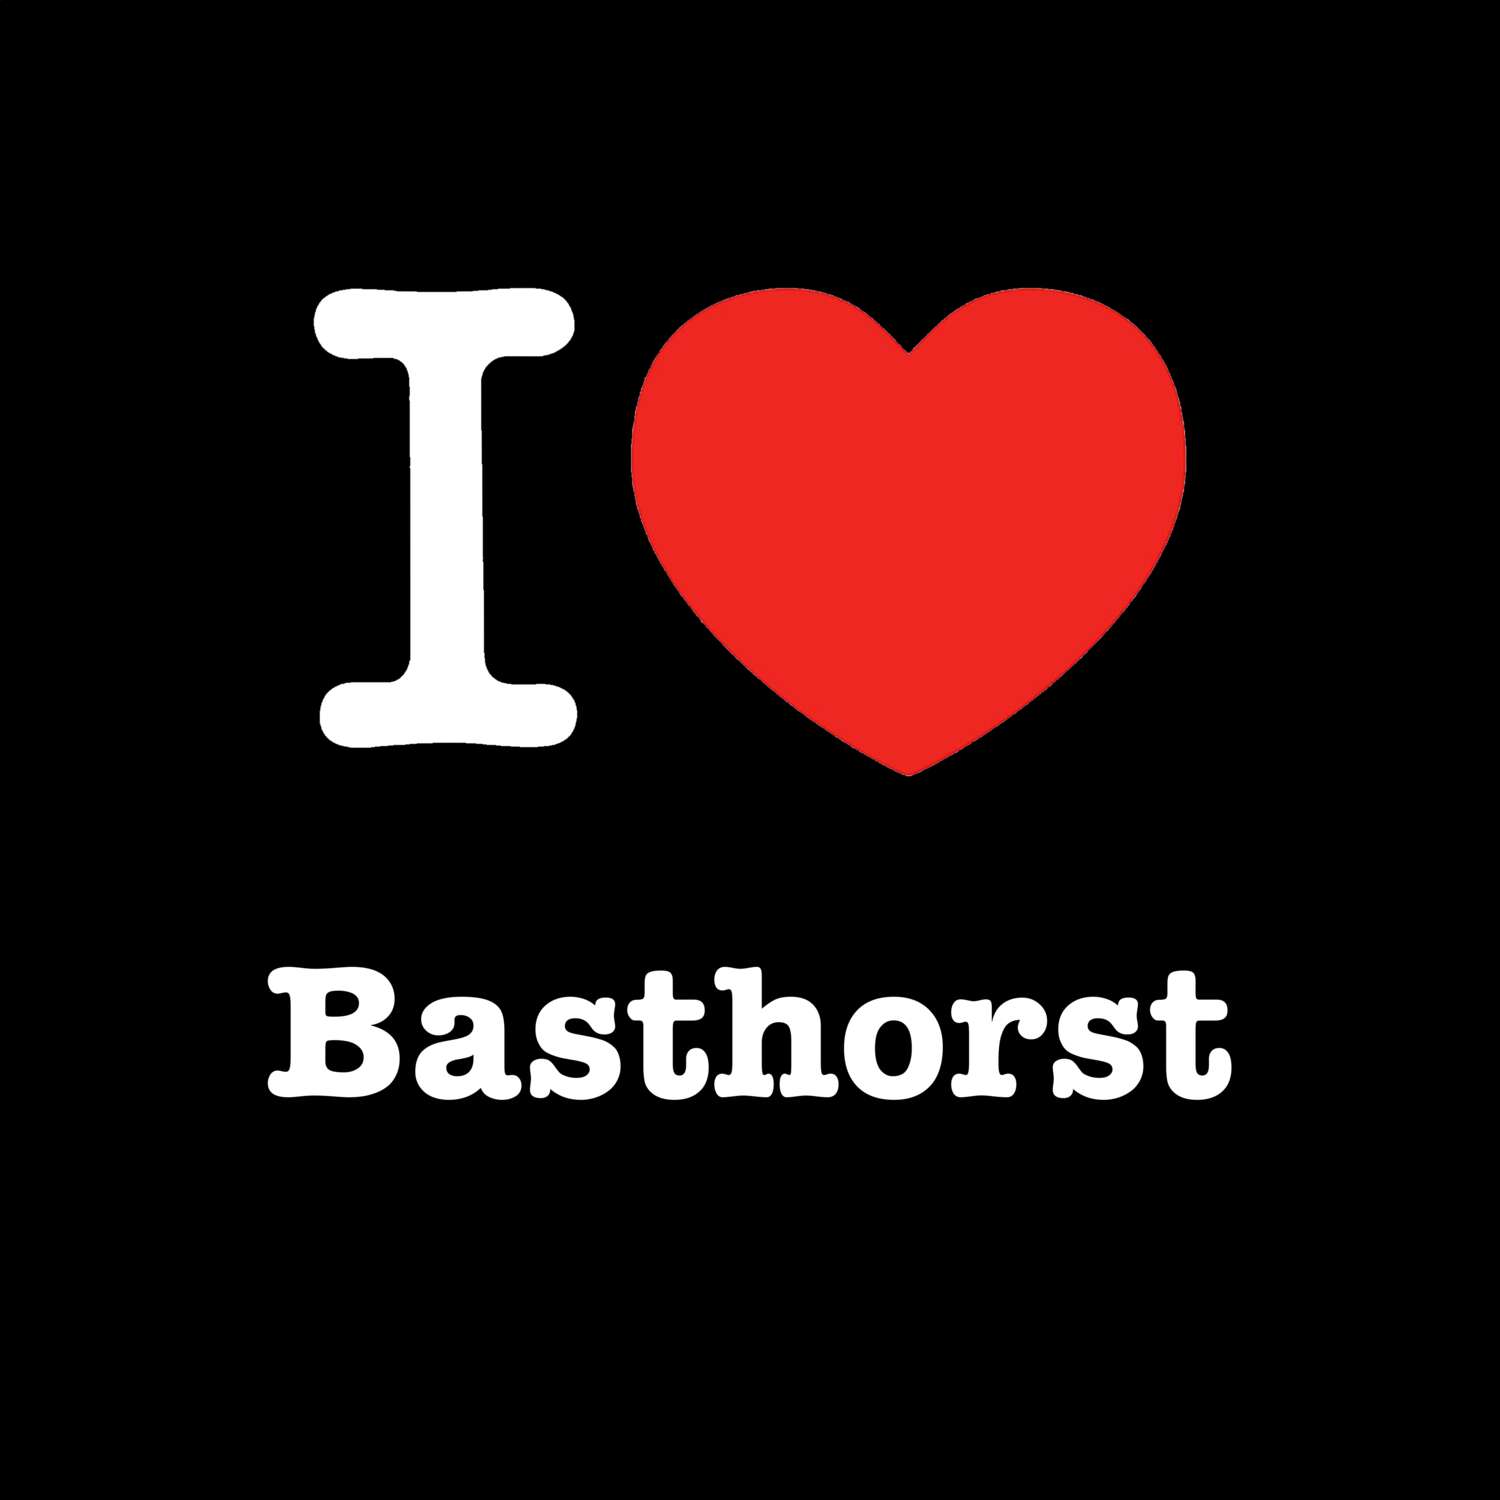 Basthorst T-Shirt »I love«